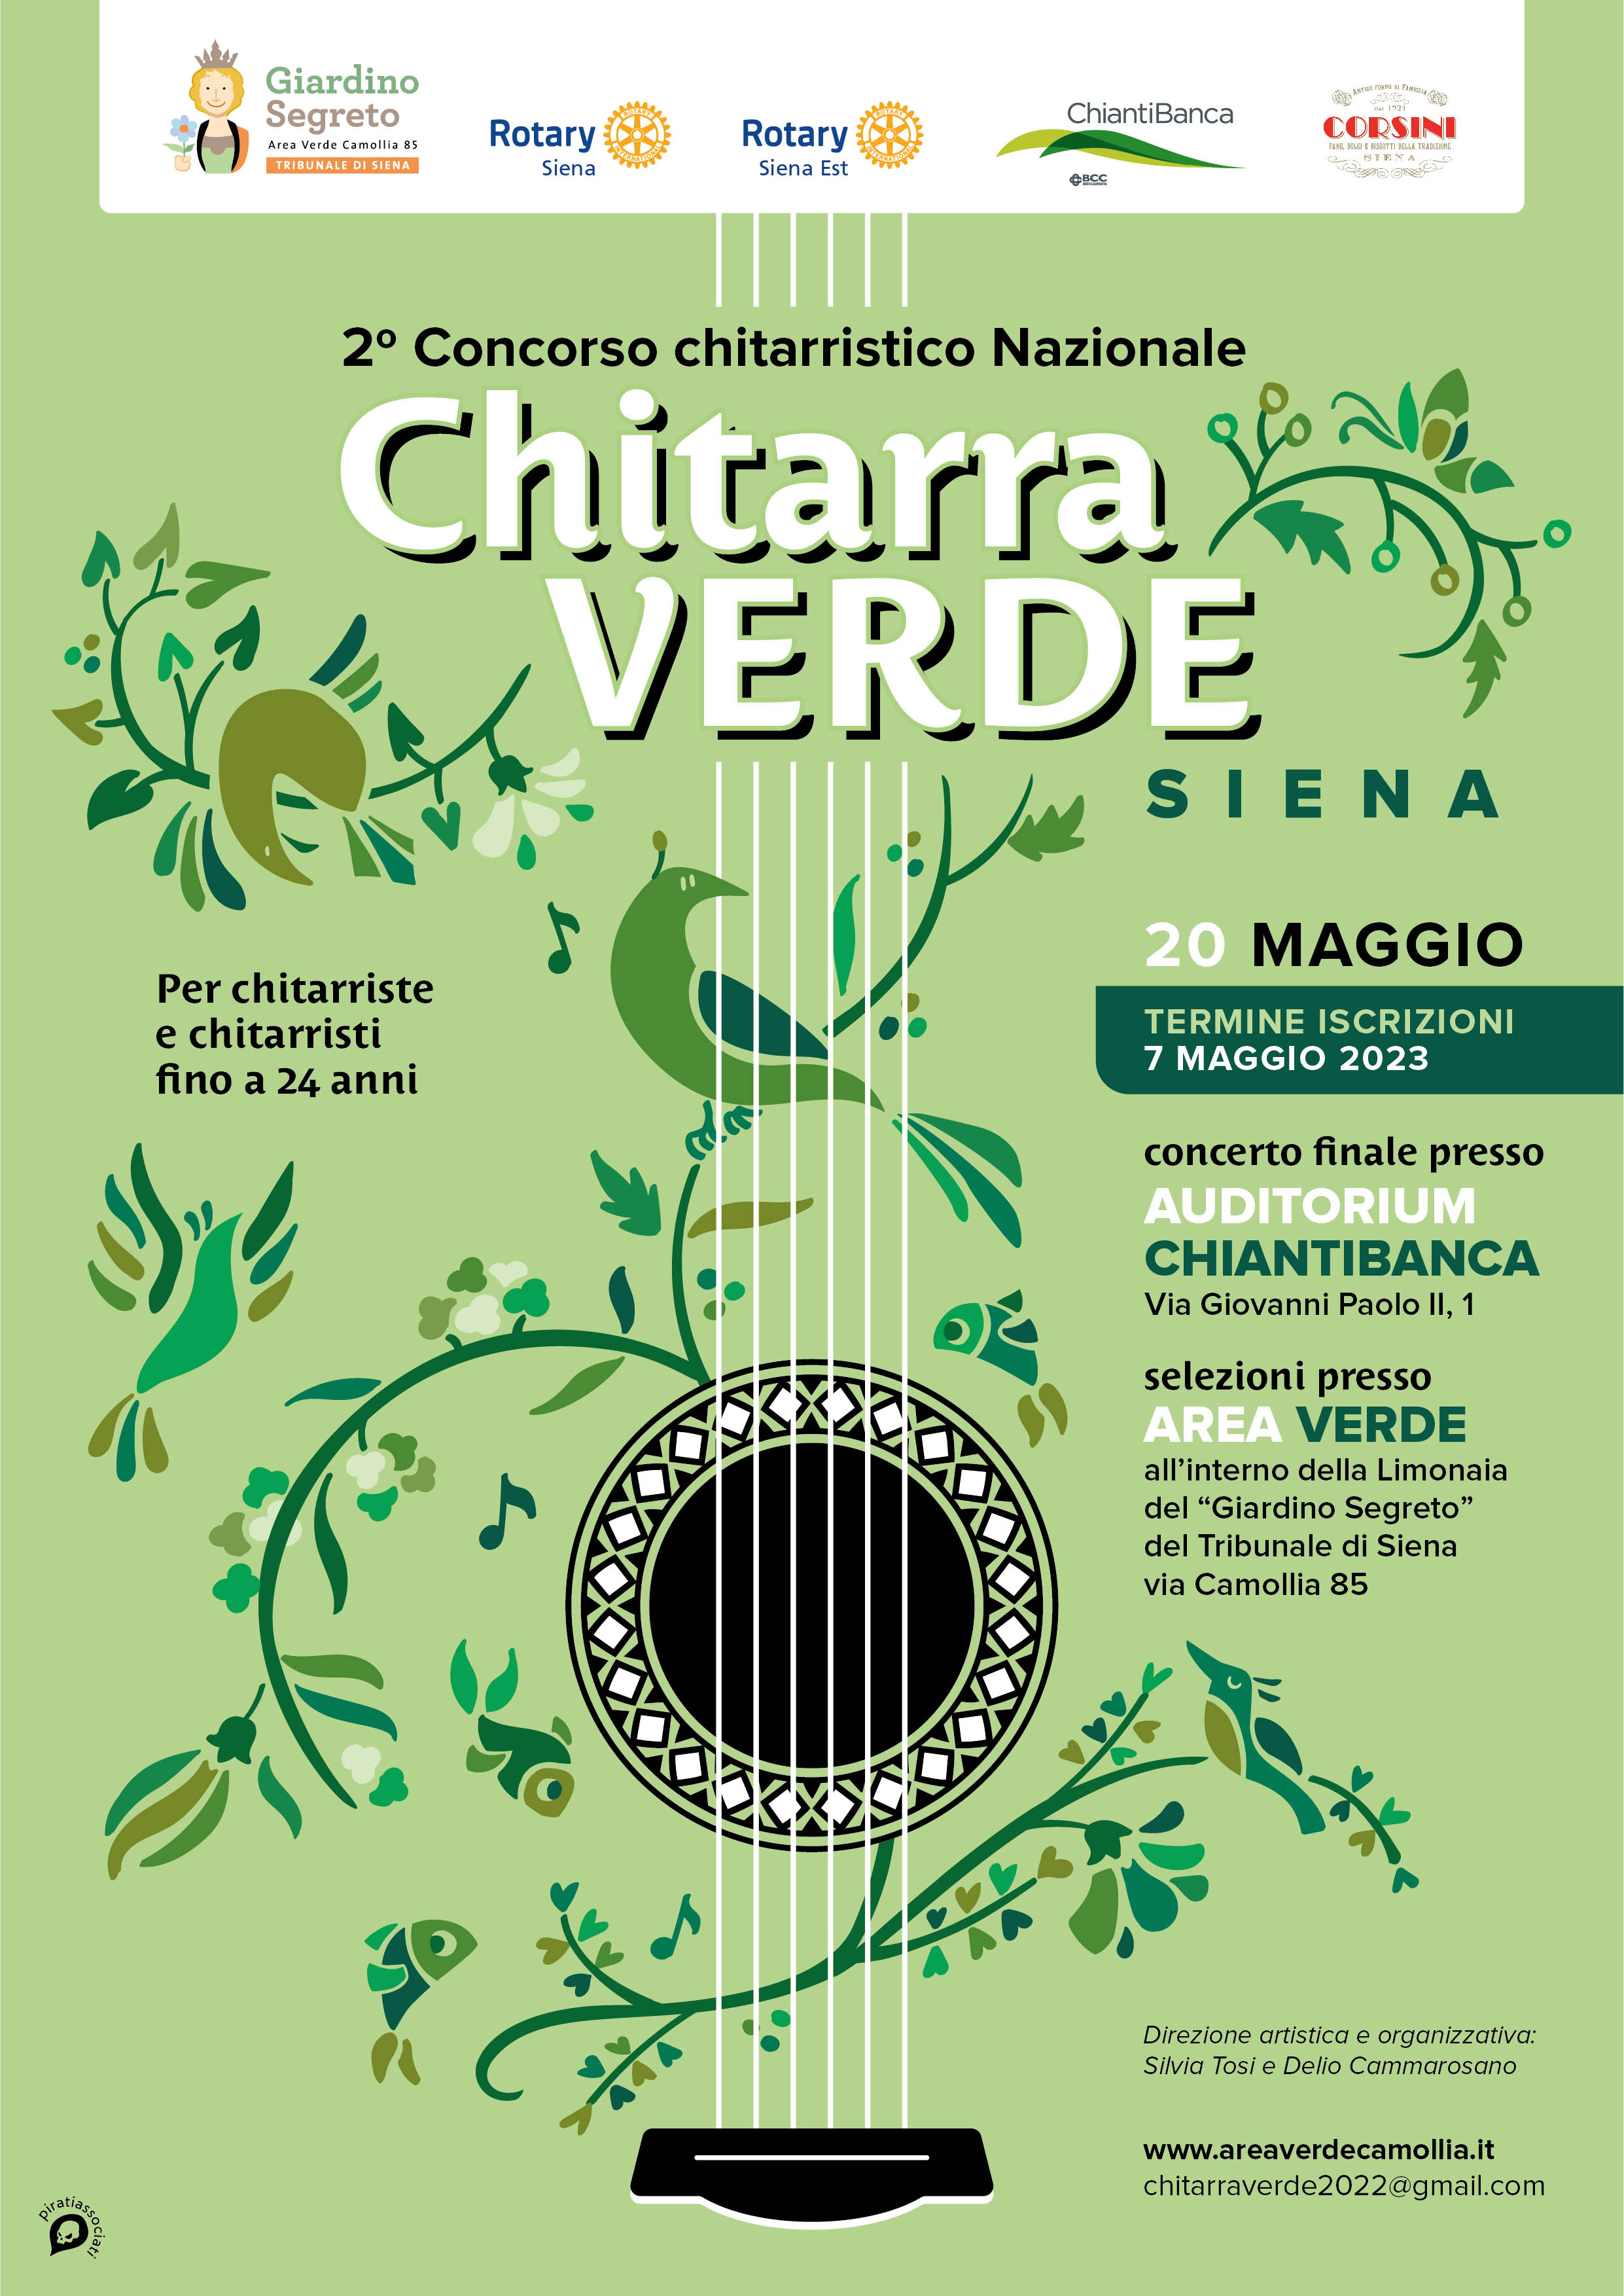 Concorso chitarristico Nazionale Chitarra Verde Siena - Scadenza 7 maggio 2023